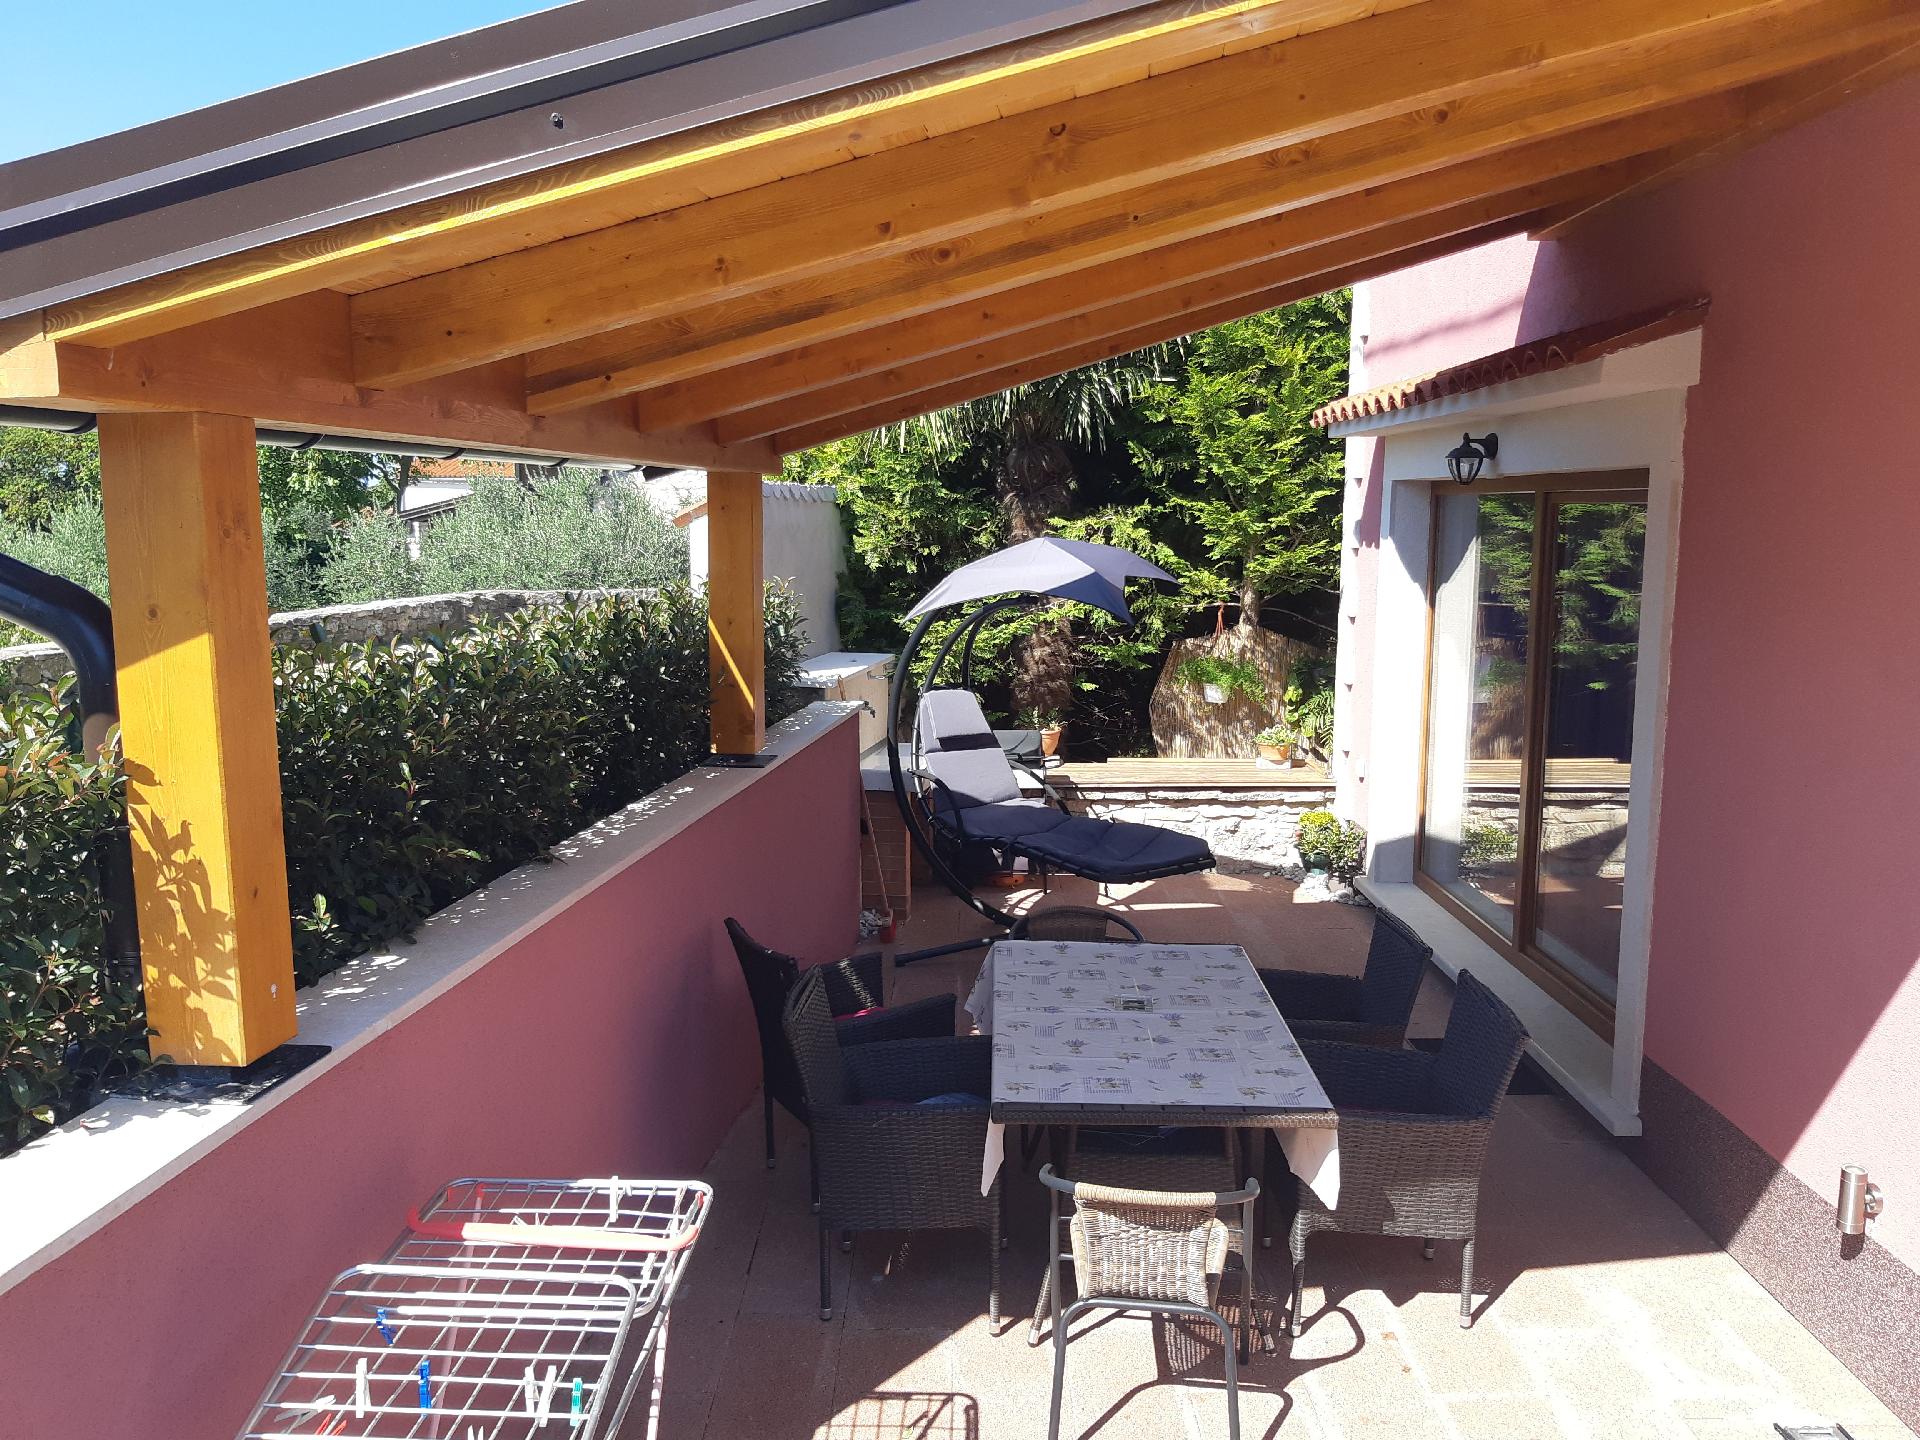 Ferienwohnung mit Terrasse für sechs Personen Ferienhaus in Kroatien